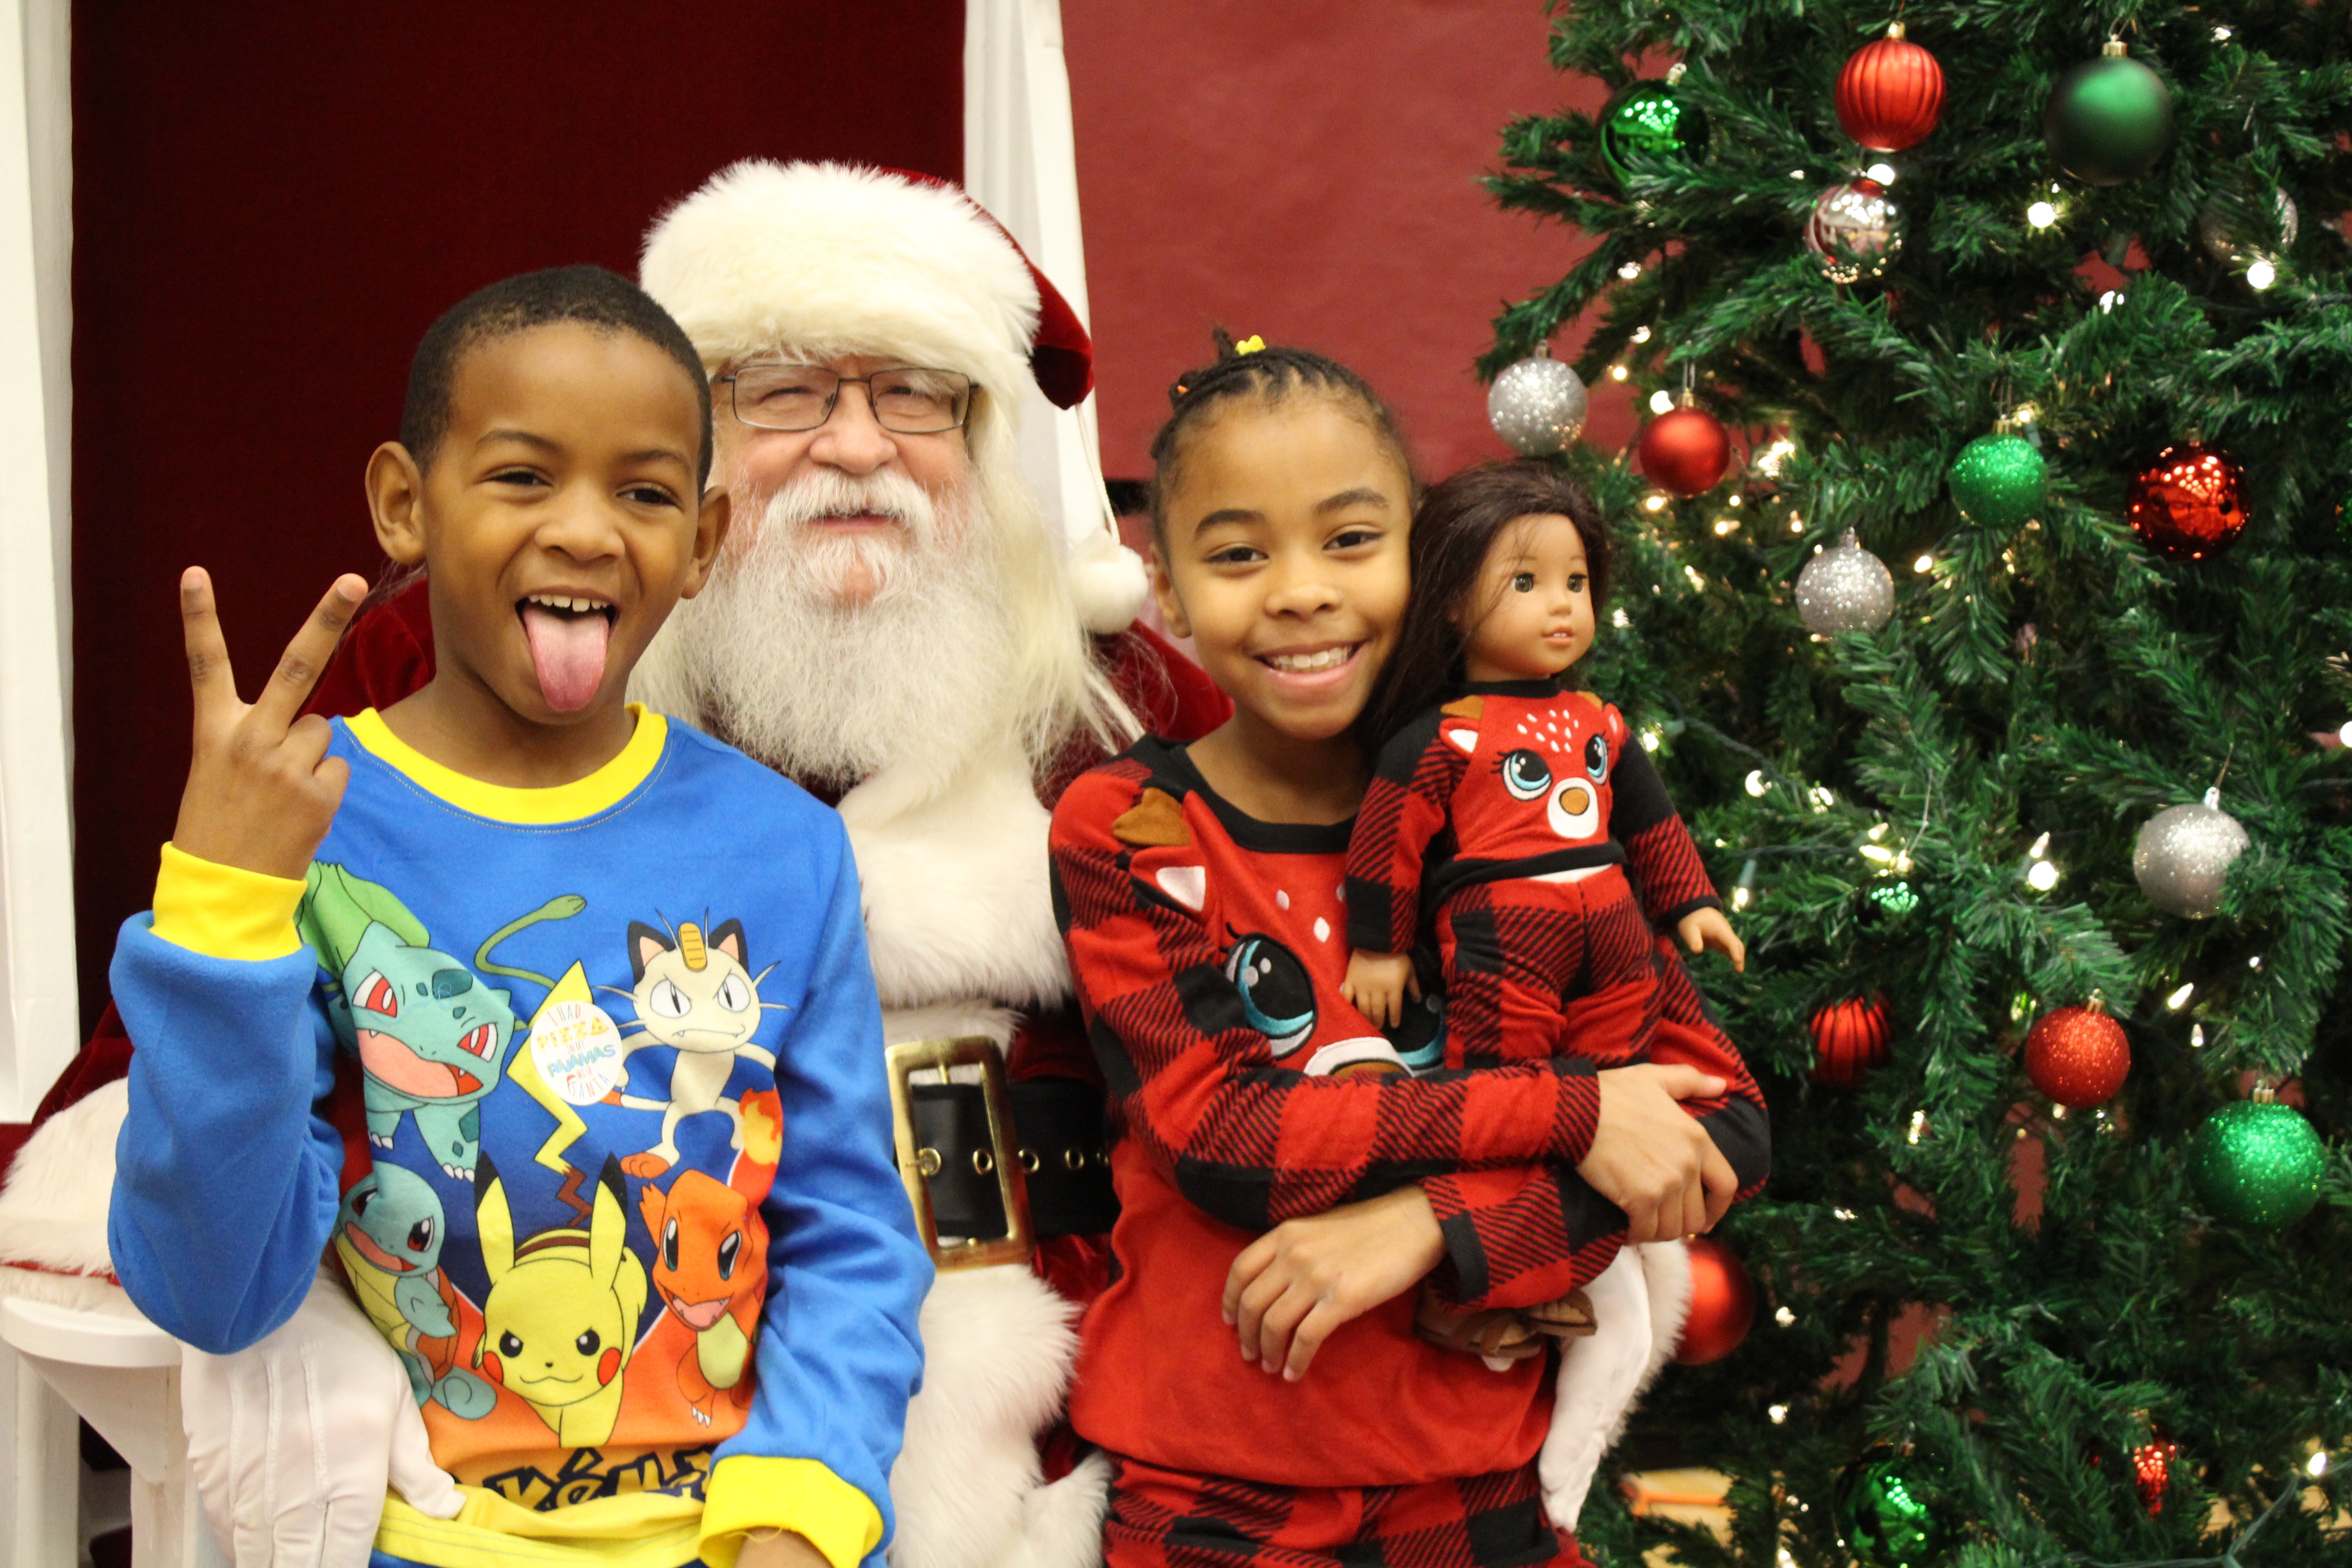 2 smiling children dressed in pajamas sitting on Santa's lap